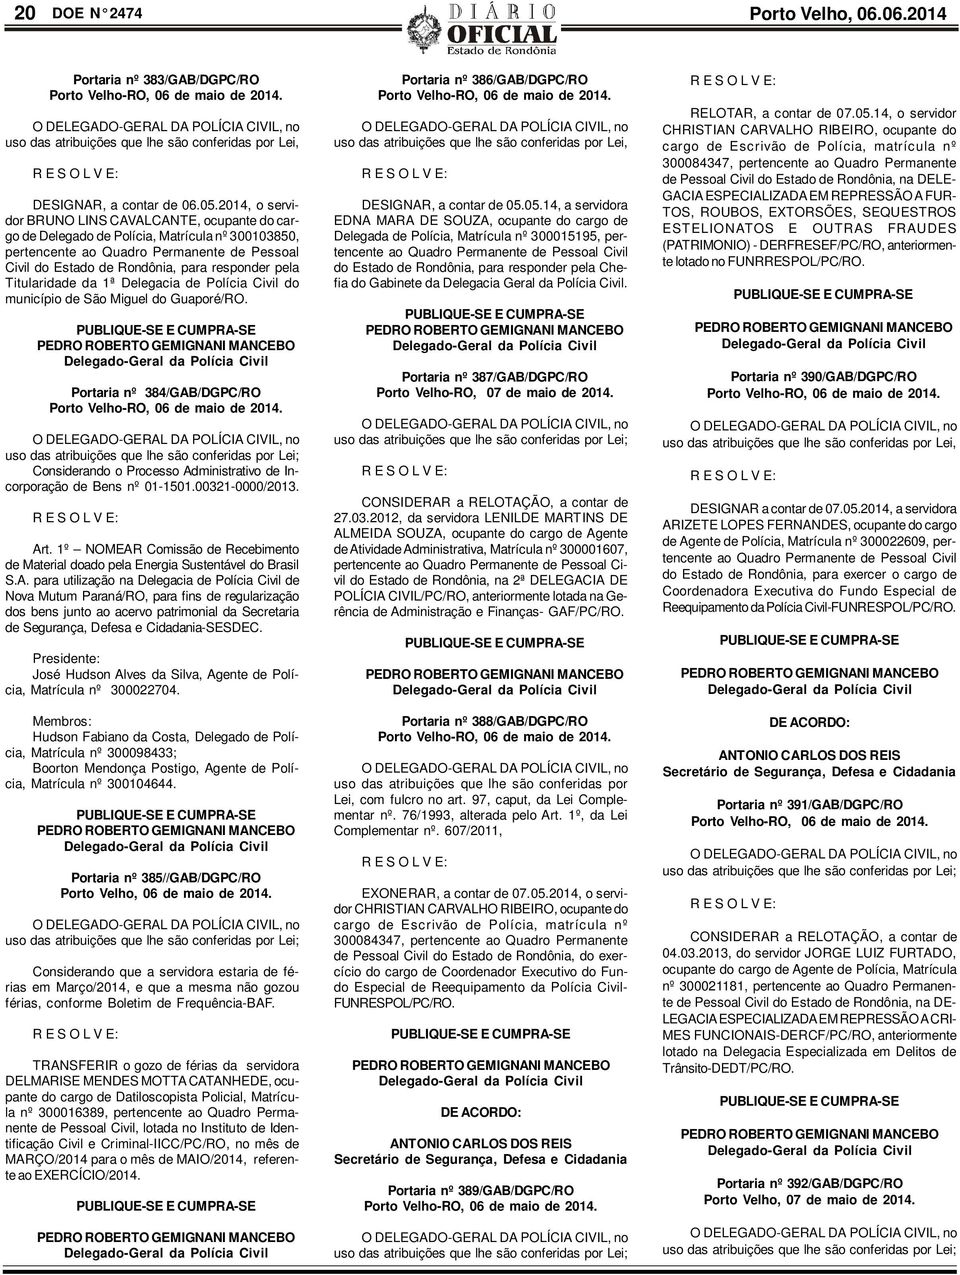 Titularidade da 1ª Delegacia de Polícia Civil do município de São Miguel do Guaporé/RO. Portaria nº 384/GAB/DGPC/RO Porto Velho-RO, 06 de maio de 2014.